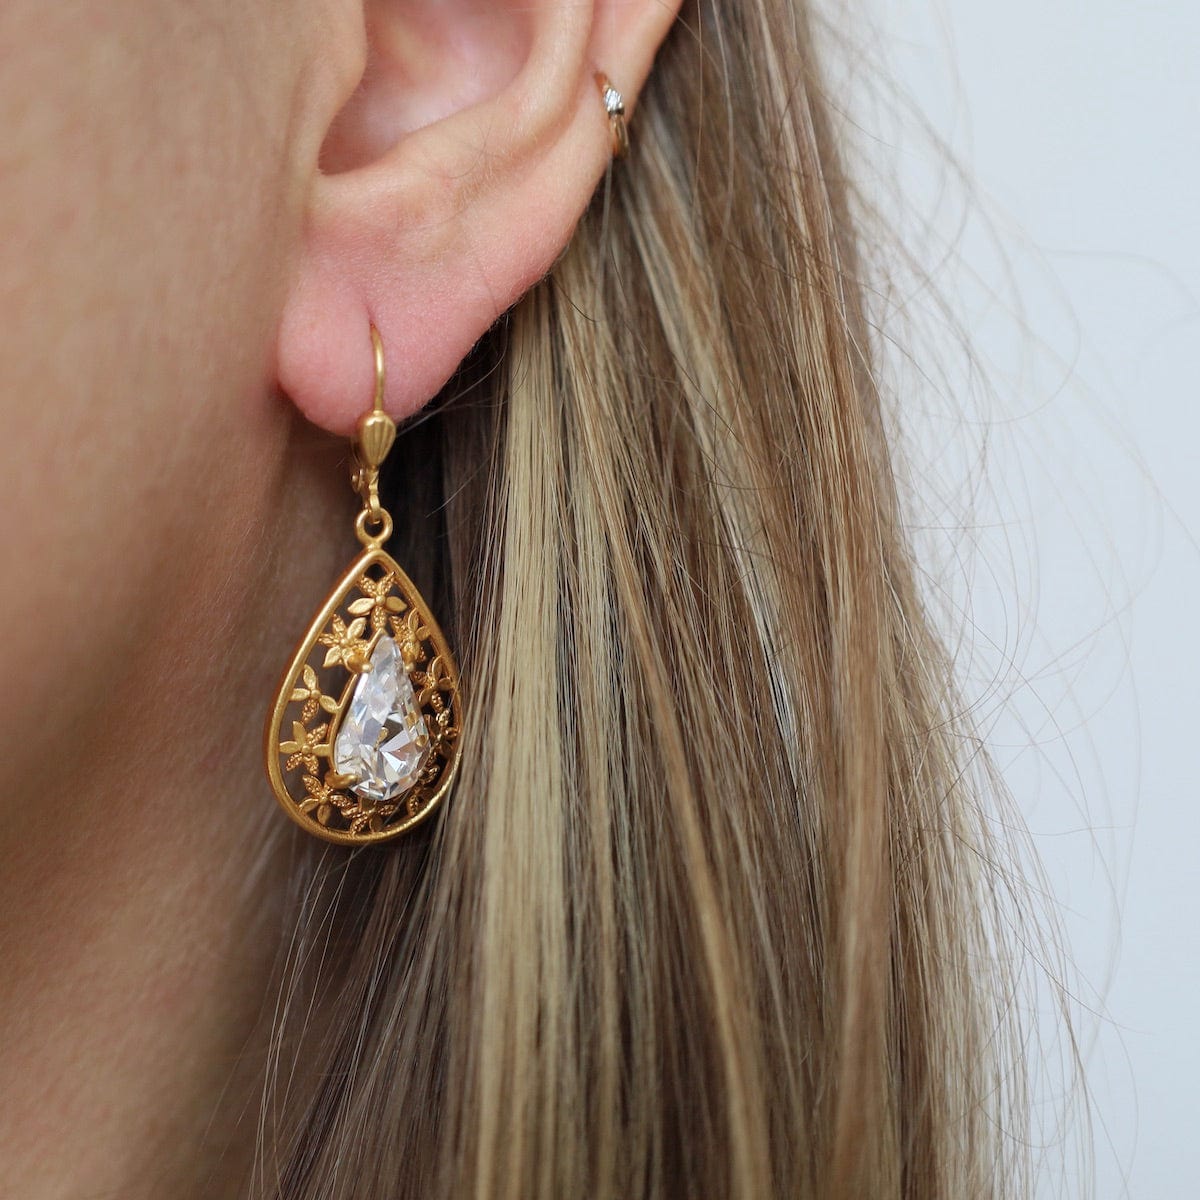 EAR-JM Teardrop Crystal Earrings - Gold Plate